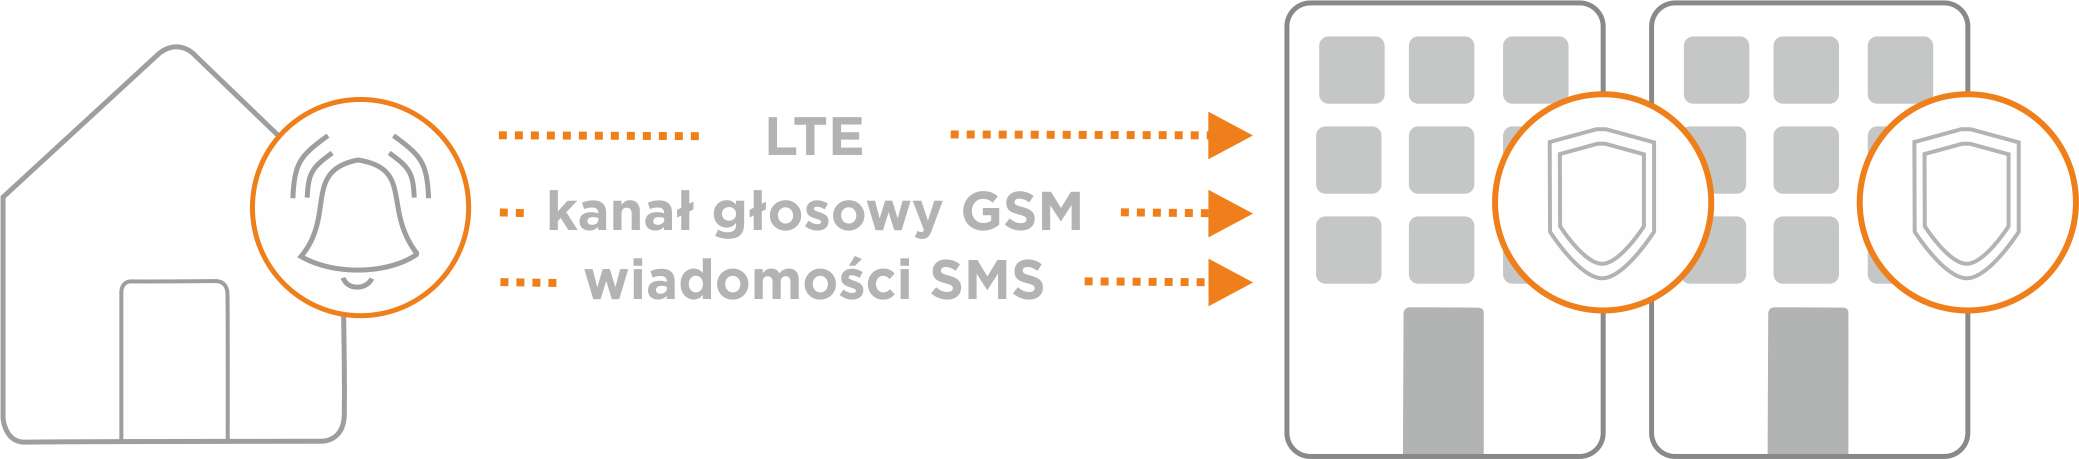 LTE, kanał głosowy GSM, wiadomości SMS